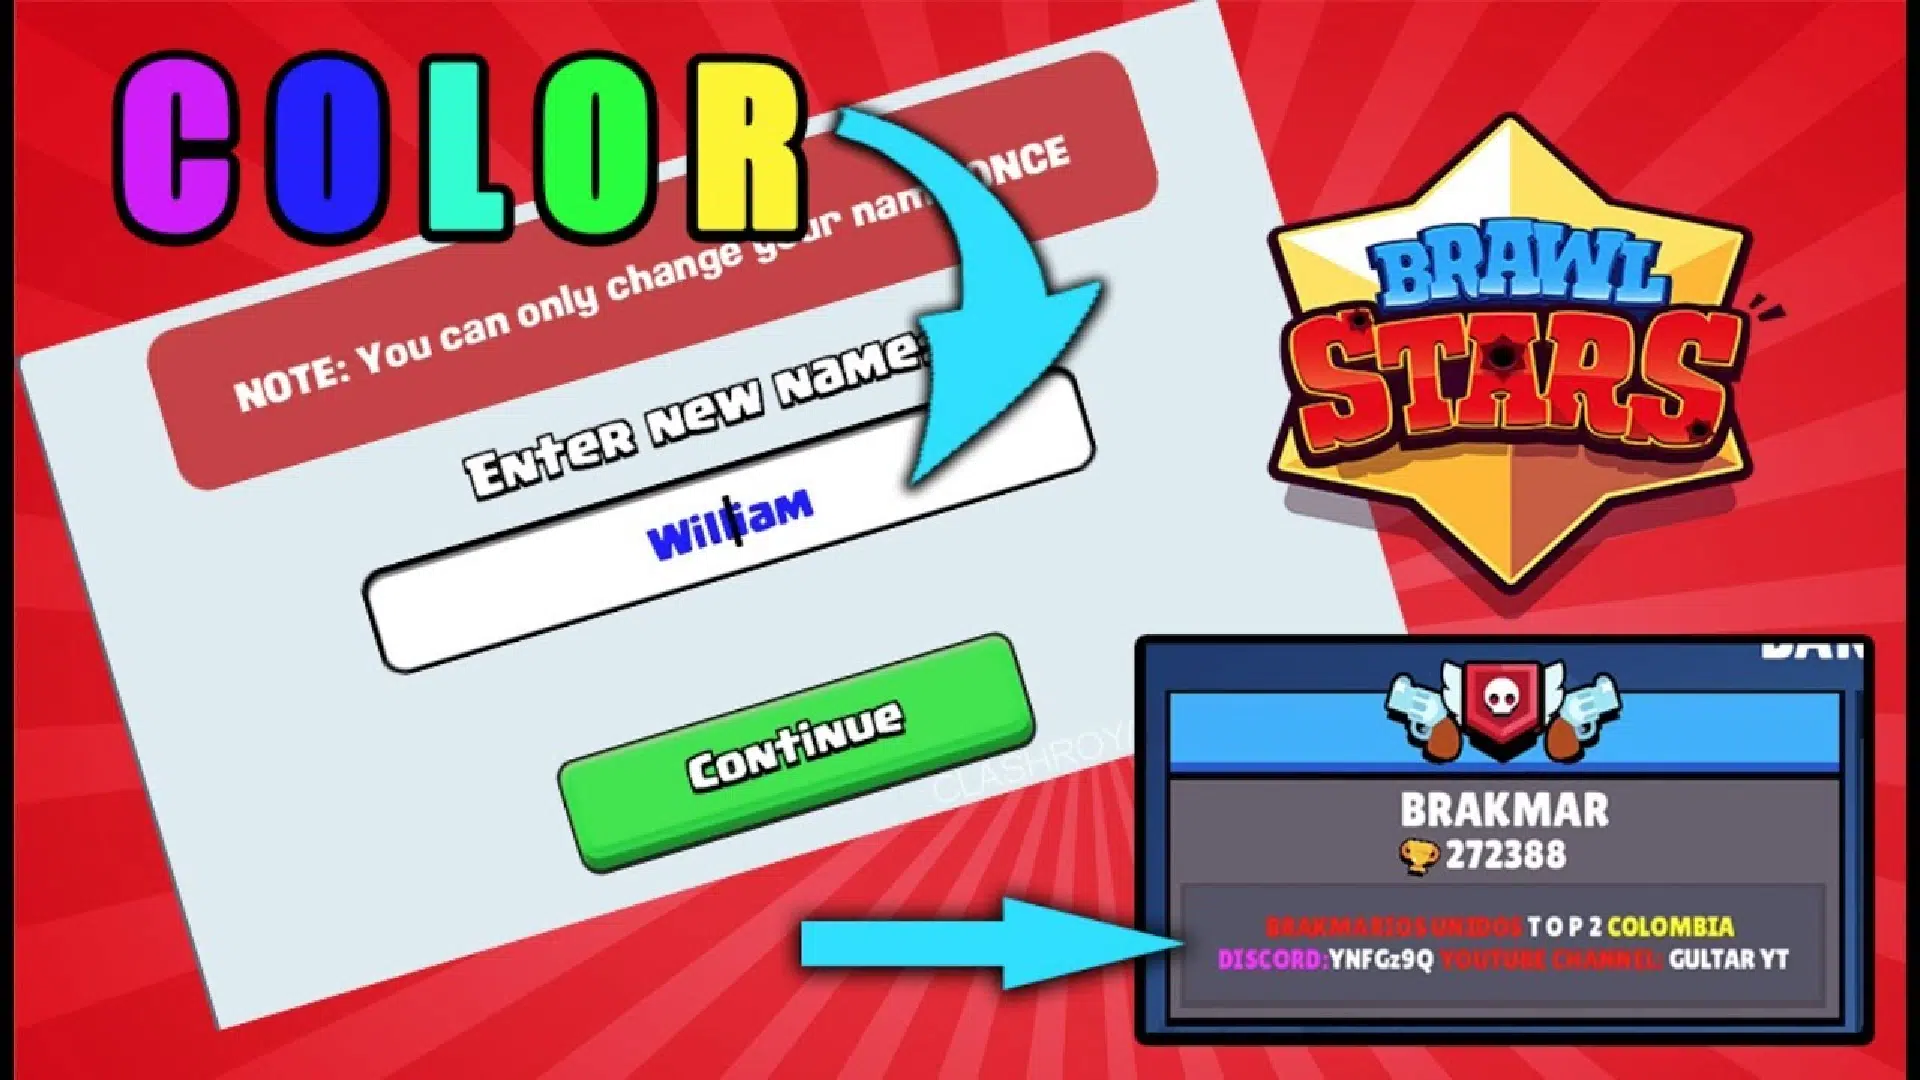 Cómo cambiar el color de tu nombre en Brawl Stars